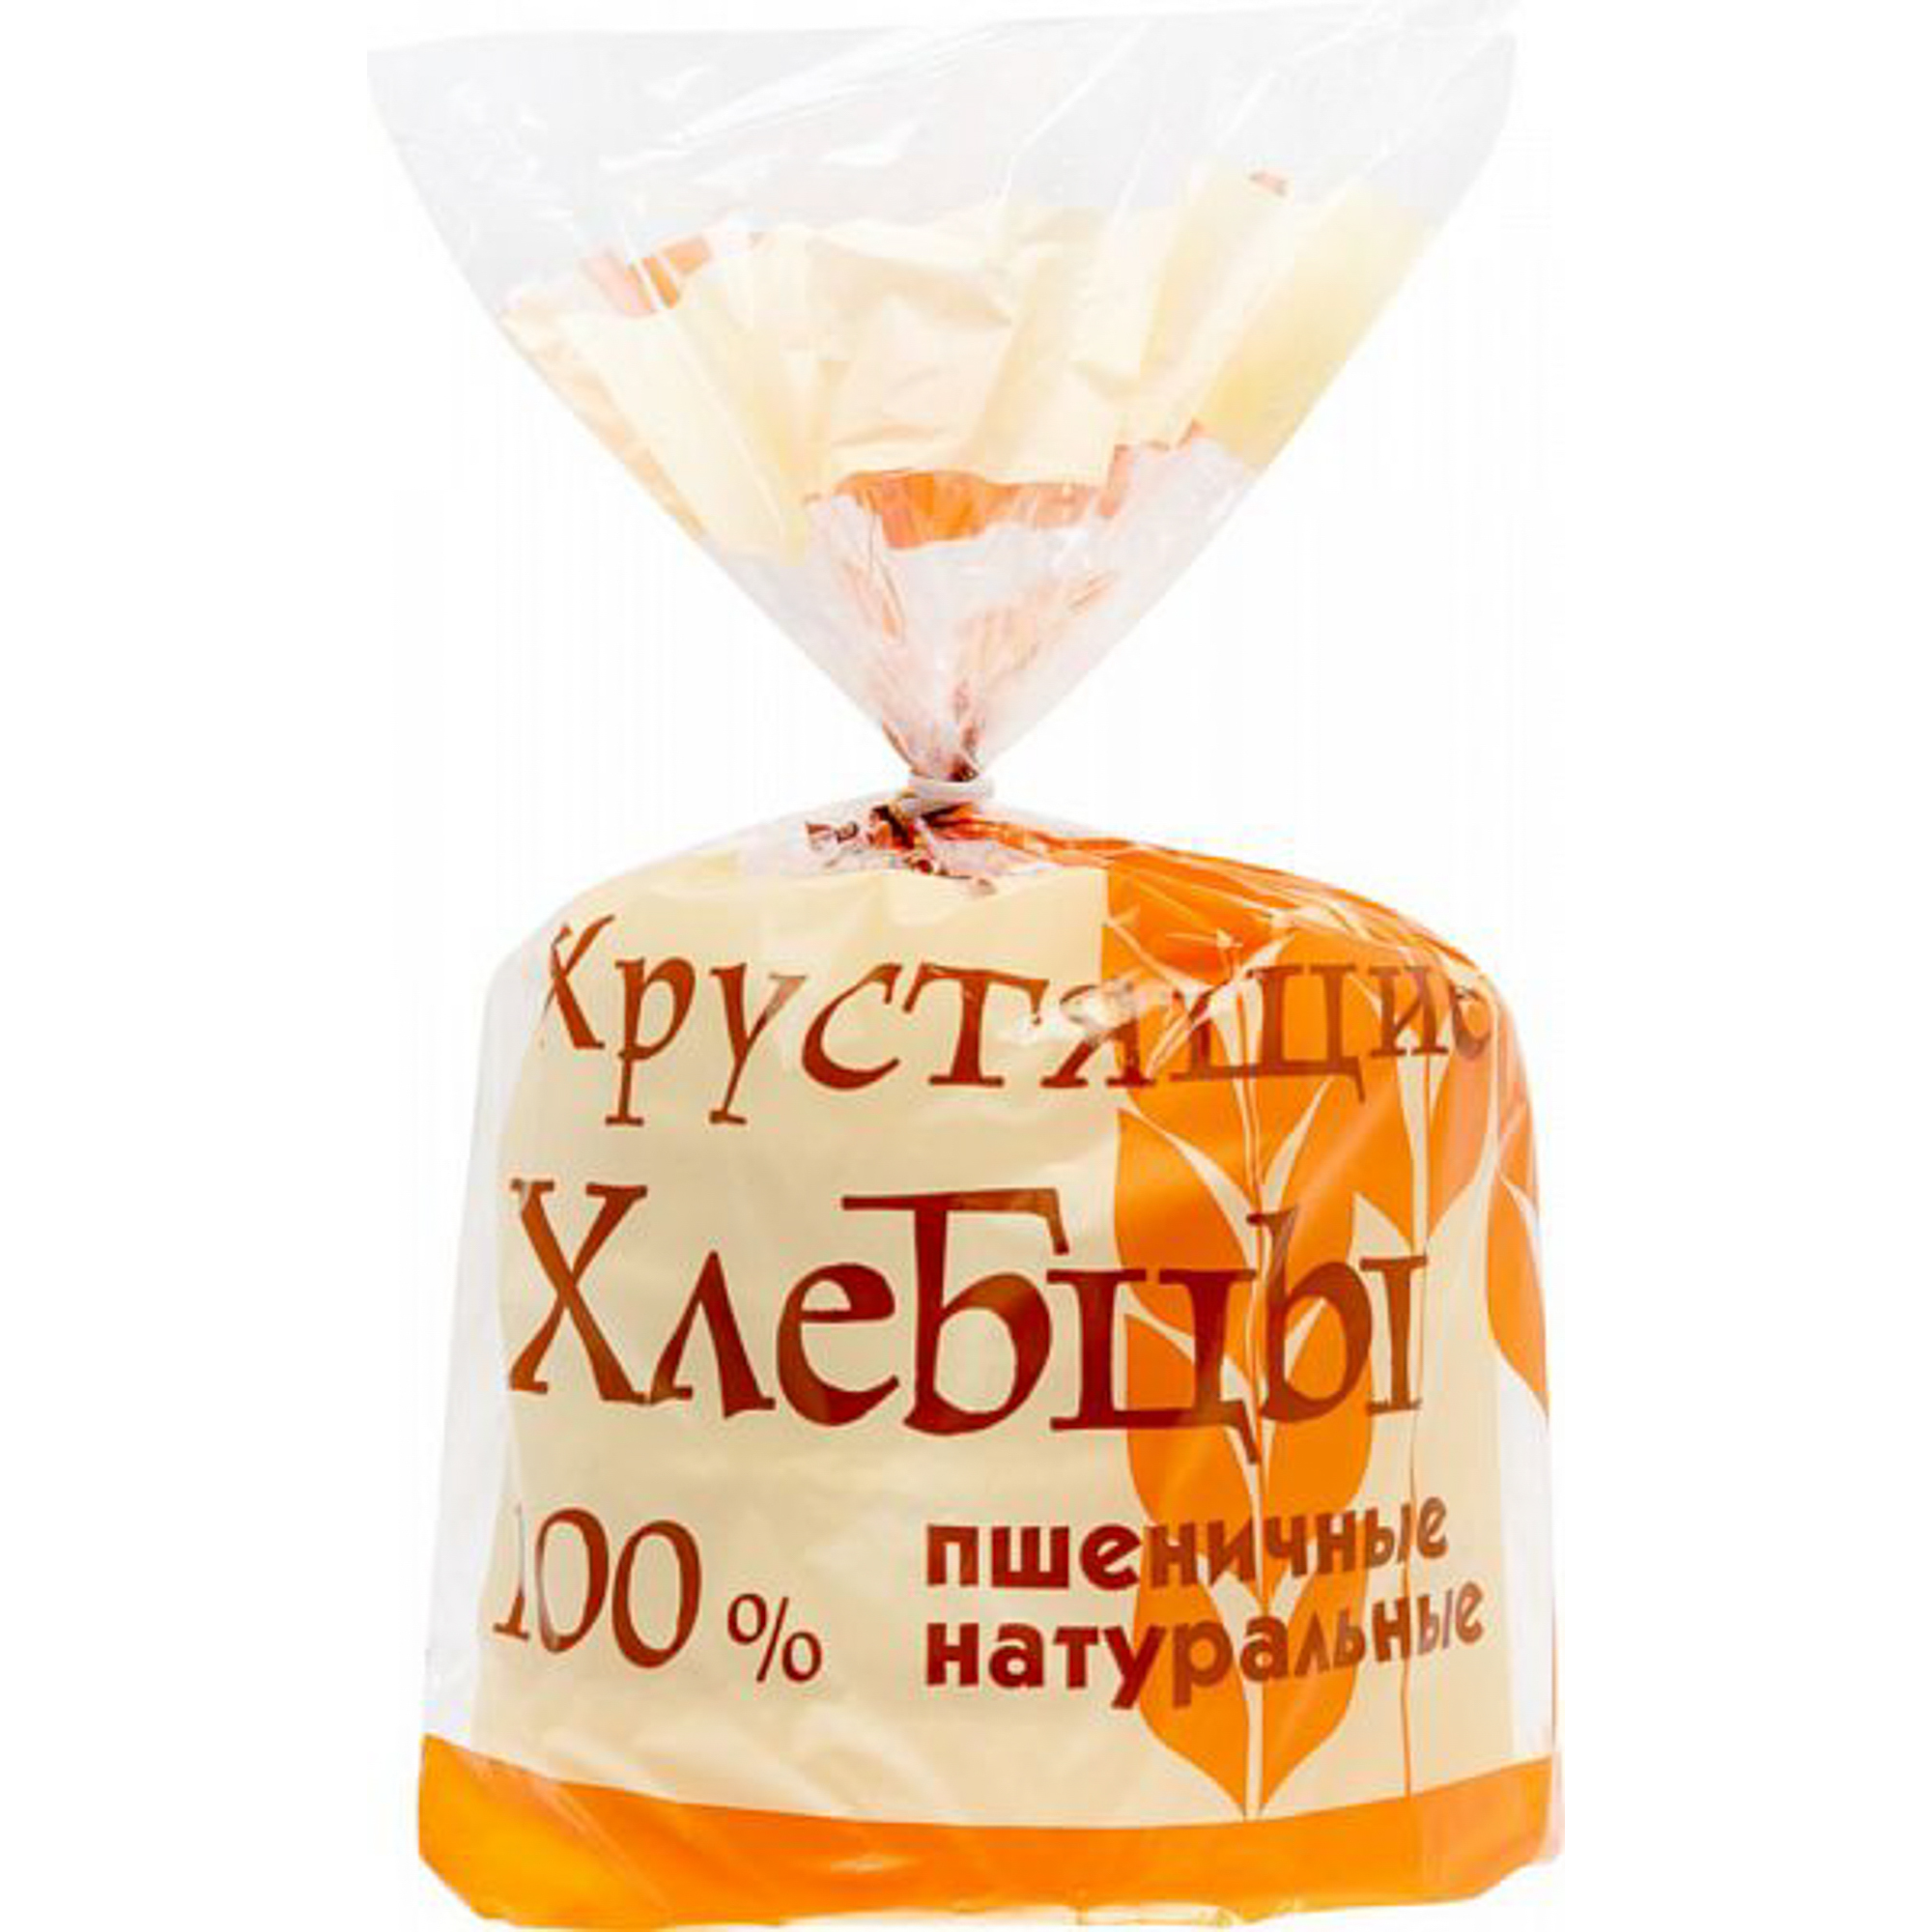 Хлебцы Lope-Lope хрустящие пшеничные 60 г хлебцы щедрые бородинские тонкие 170 гр